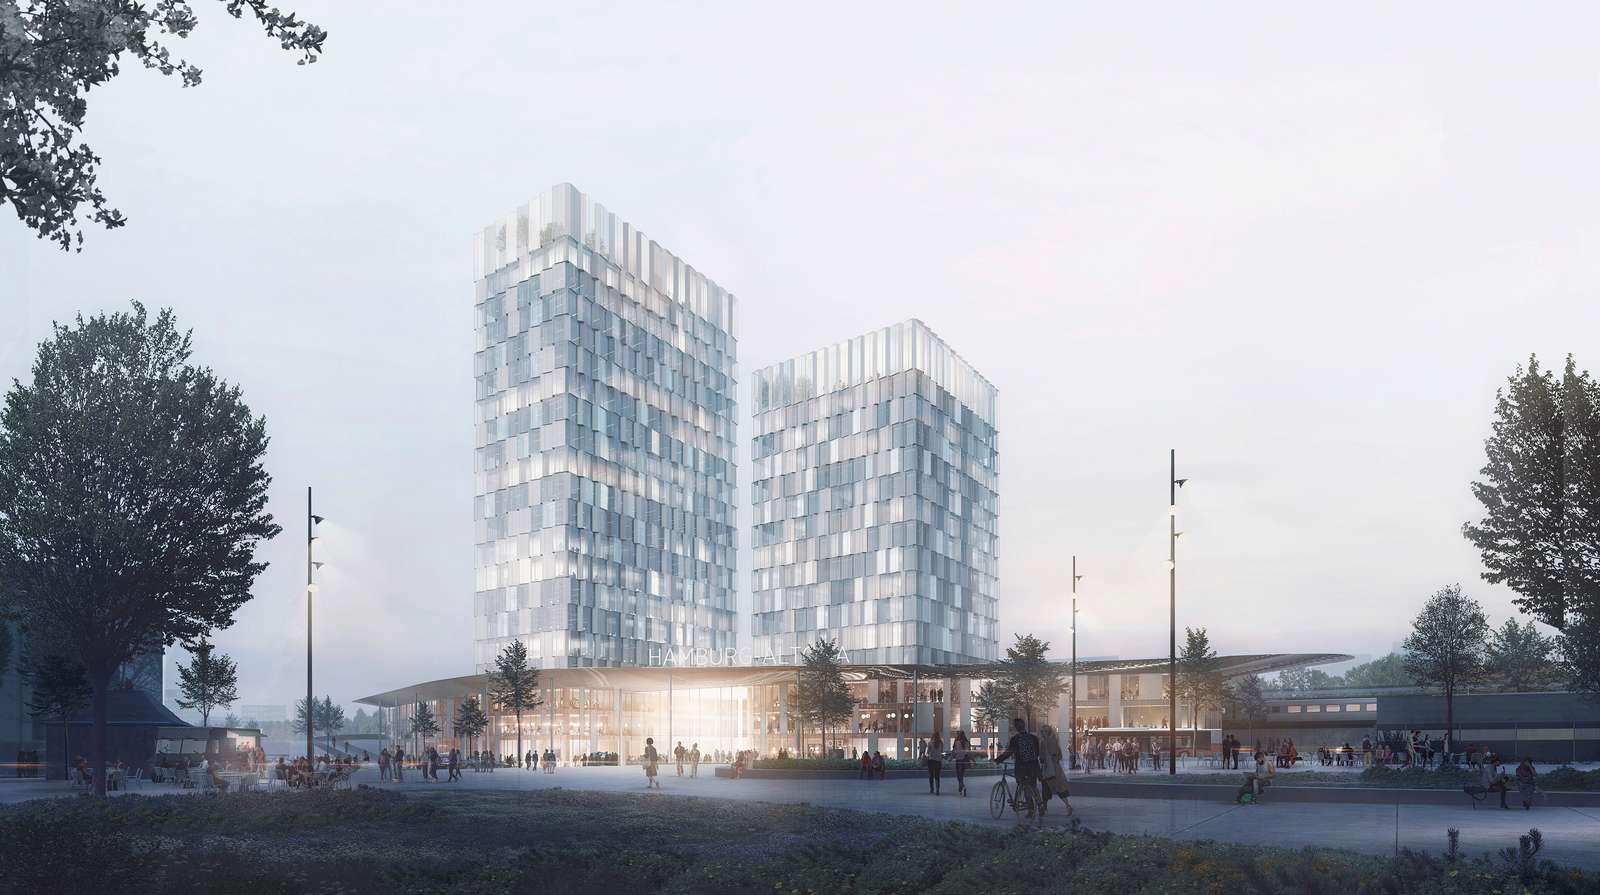 Blick auf das Konzept des neuen Bahnhofs Diebsteich von Das Konzept des neuen Bahnhofs Altona. Foto: C. F. Møller